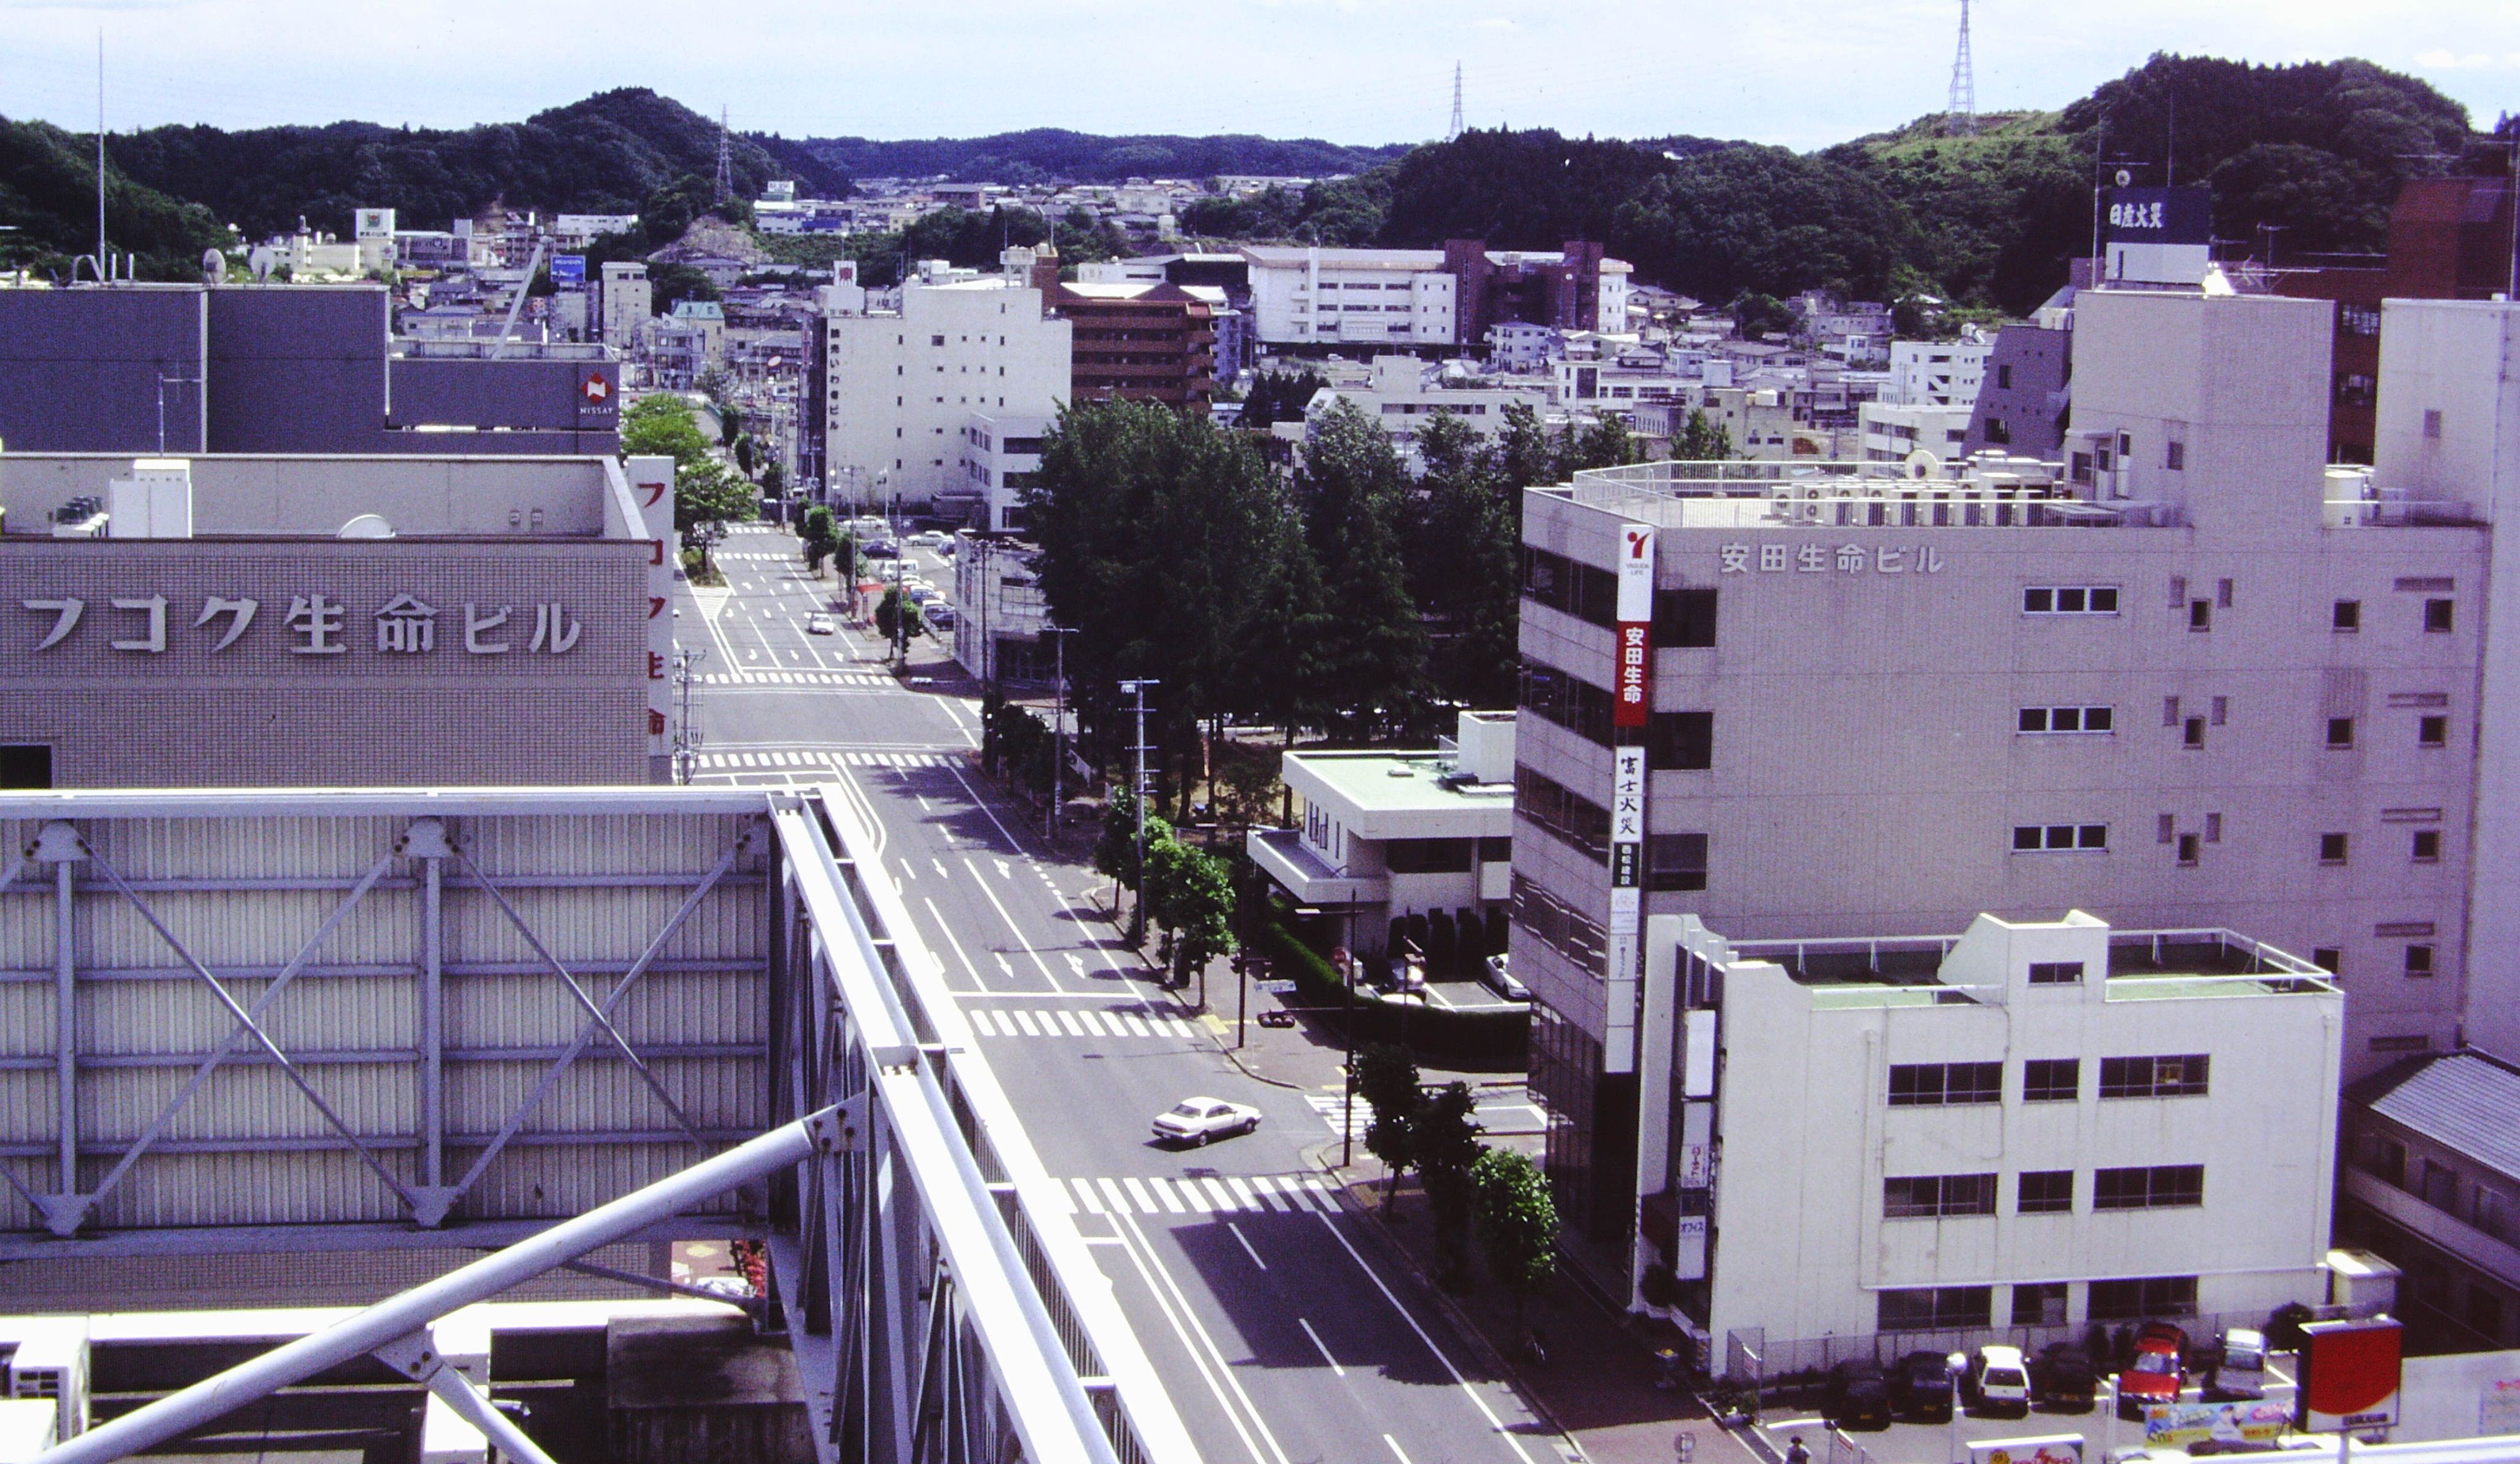 ■写真1-3　写真中央に見えるのが「小太郎公園」　〔平成8年(1996)　いわき市撮影〕